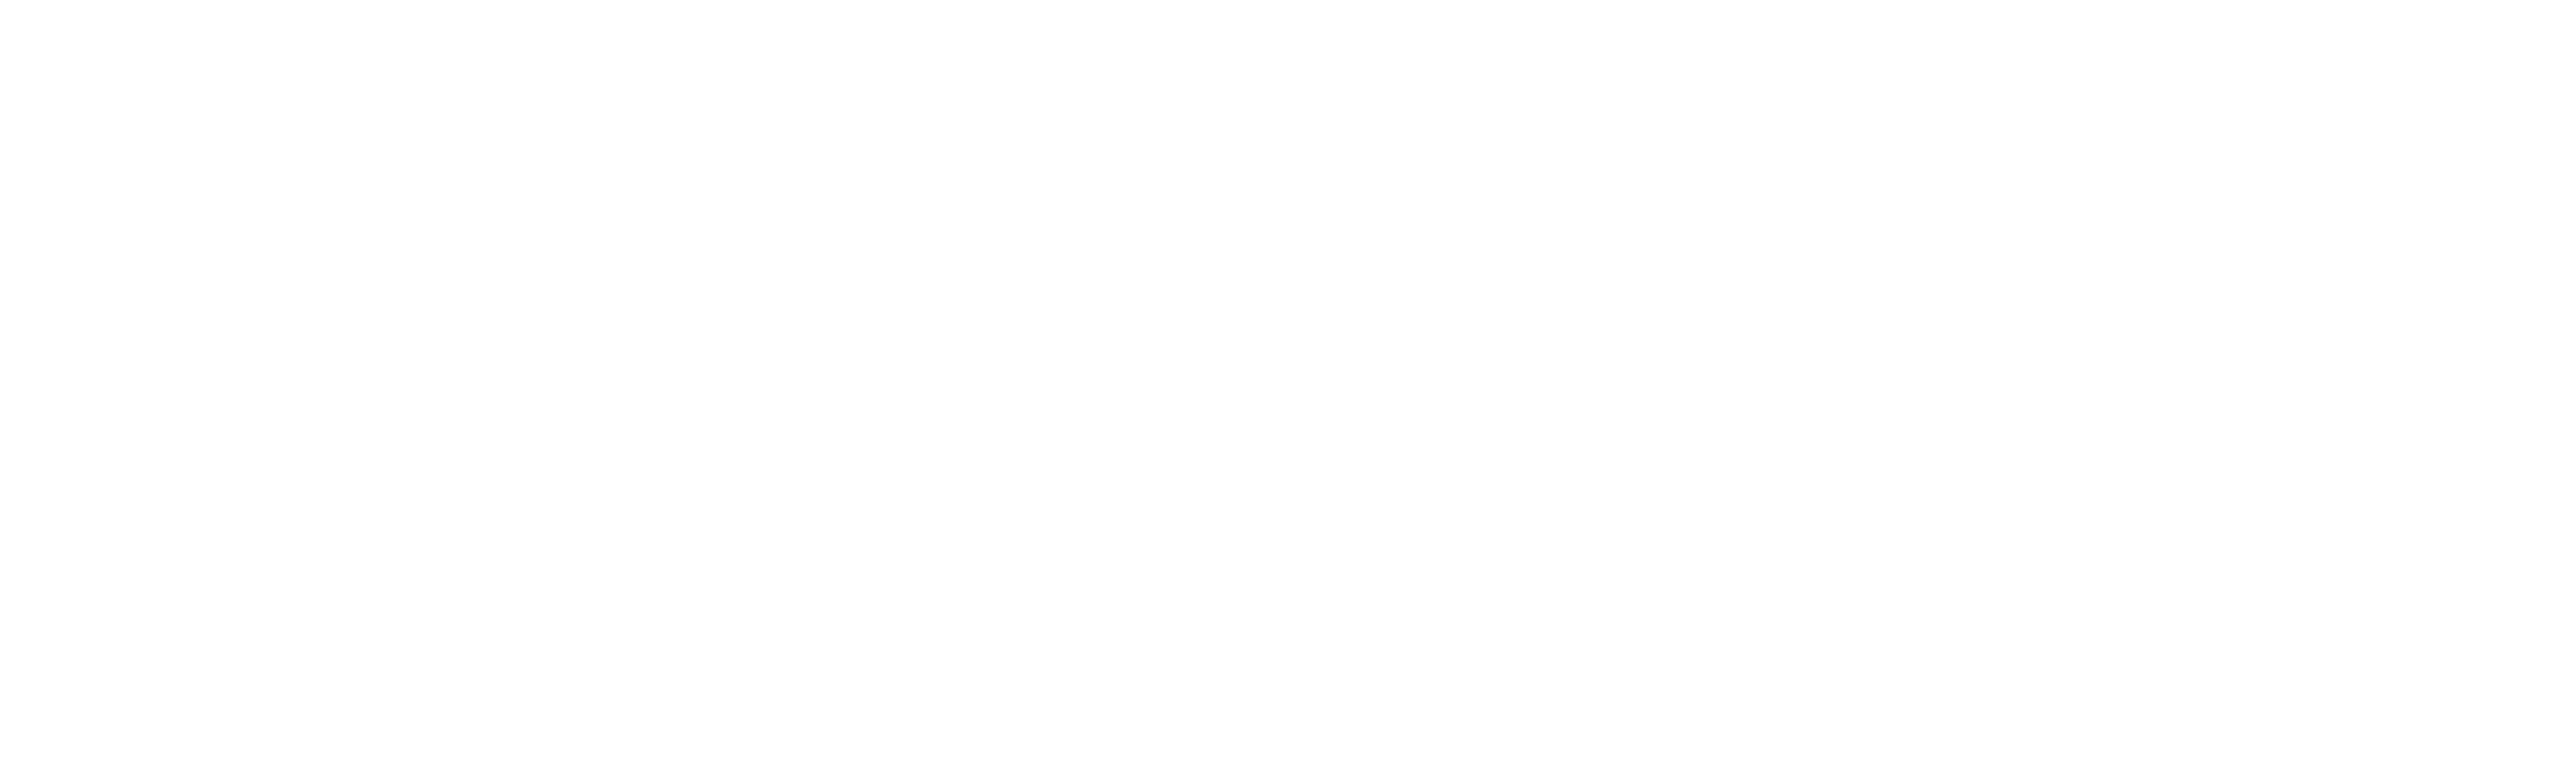 WINGSPAN_EE_digitaledition.png